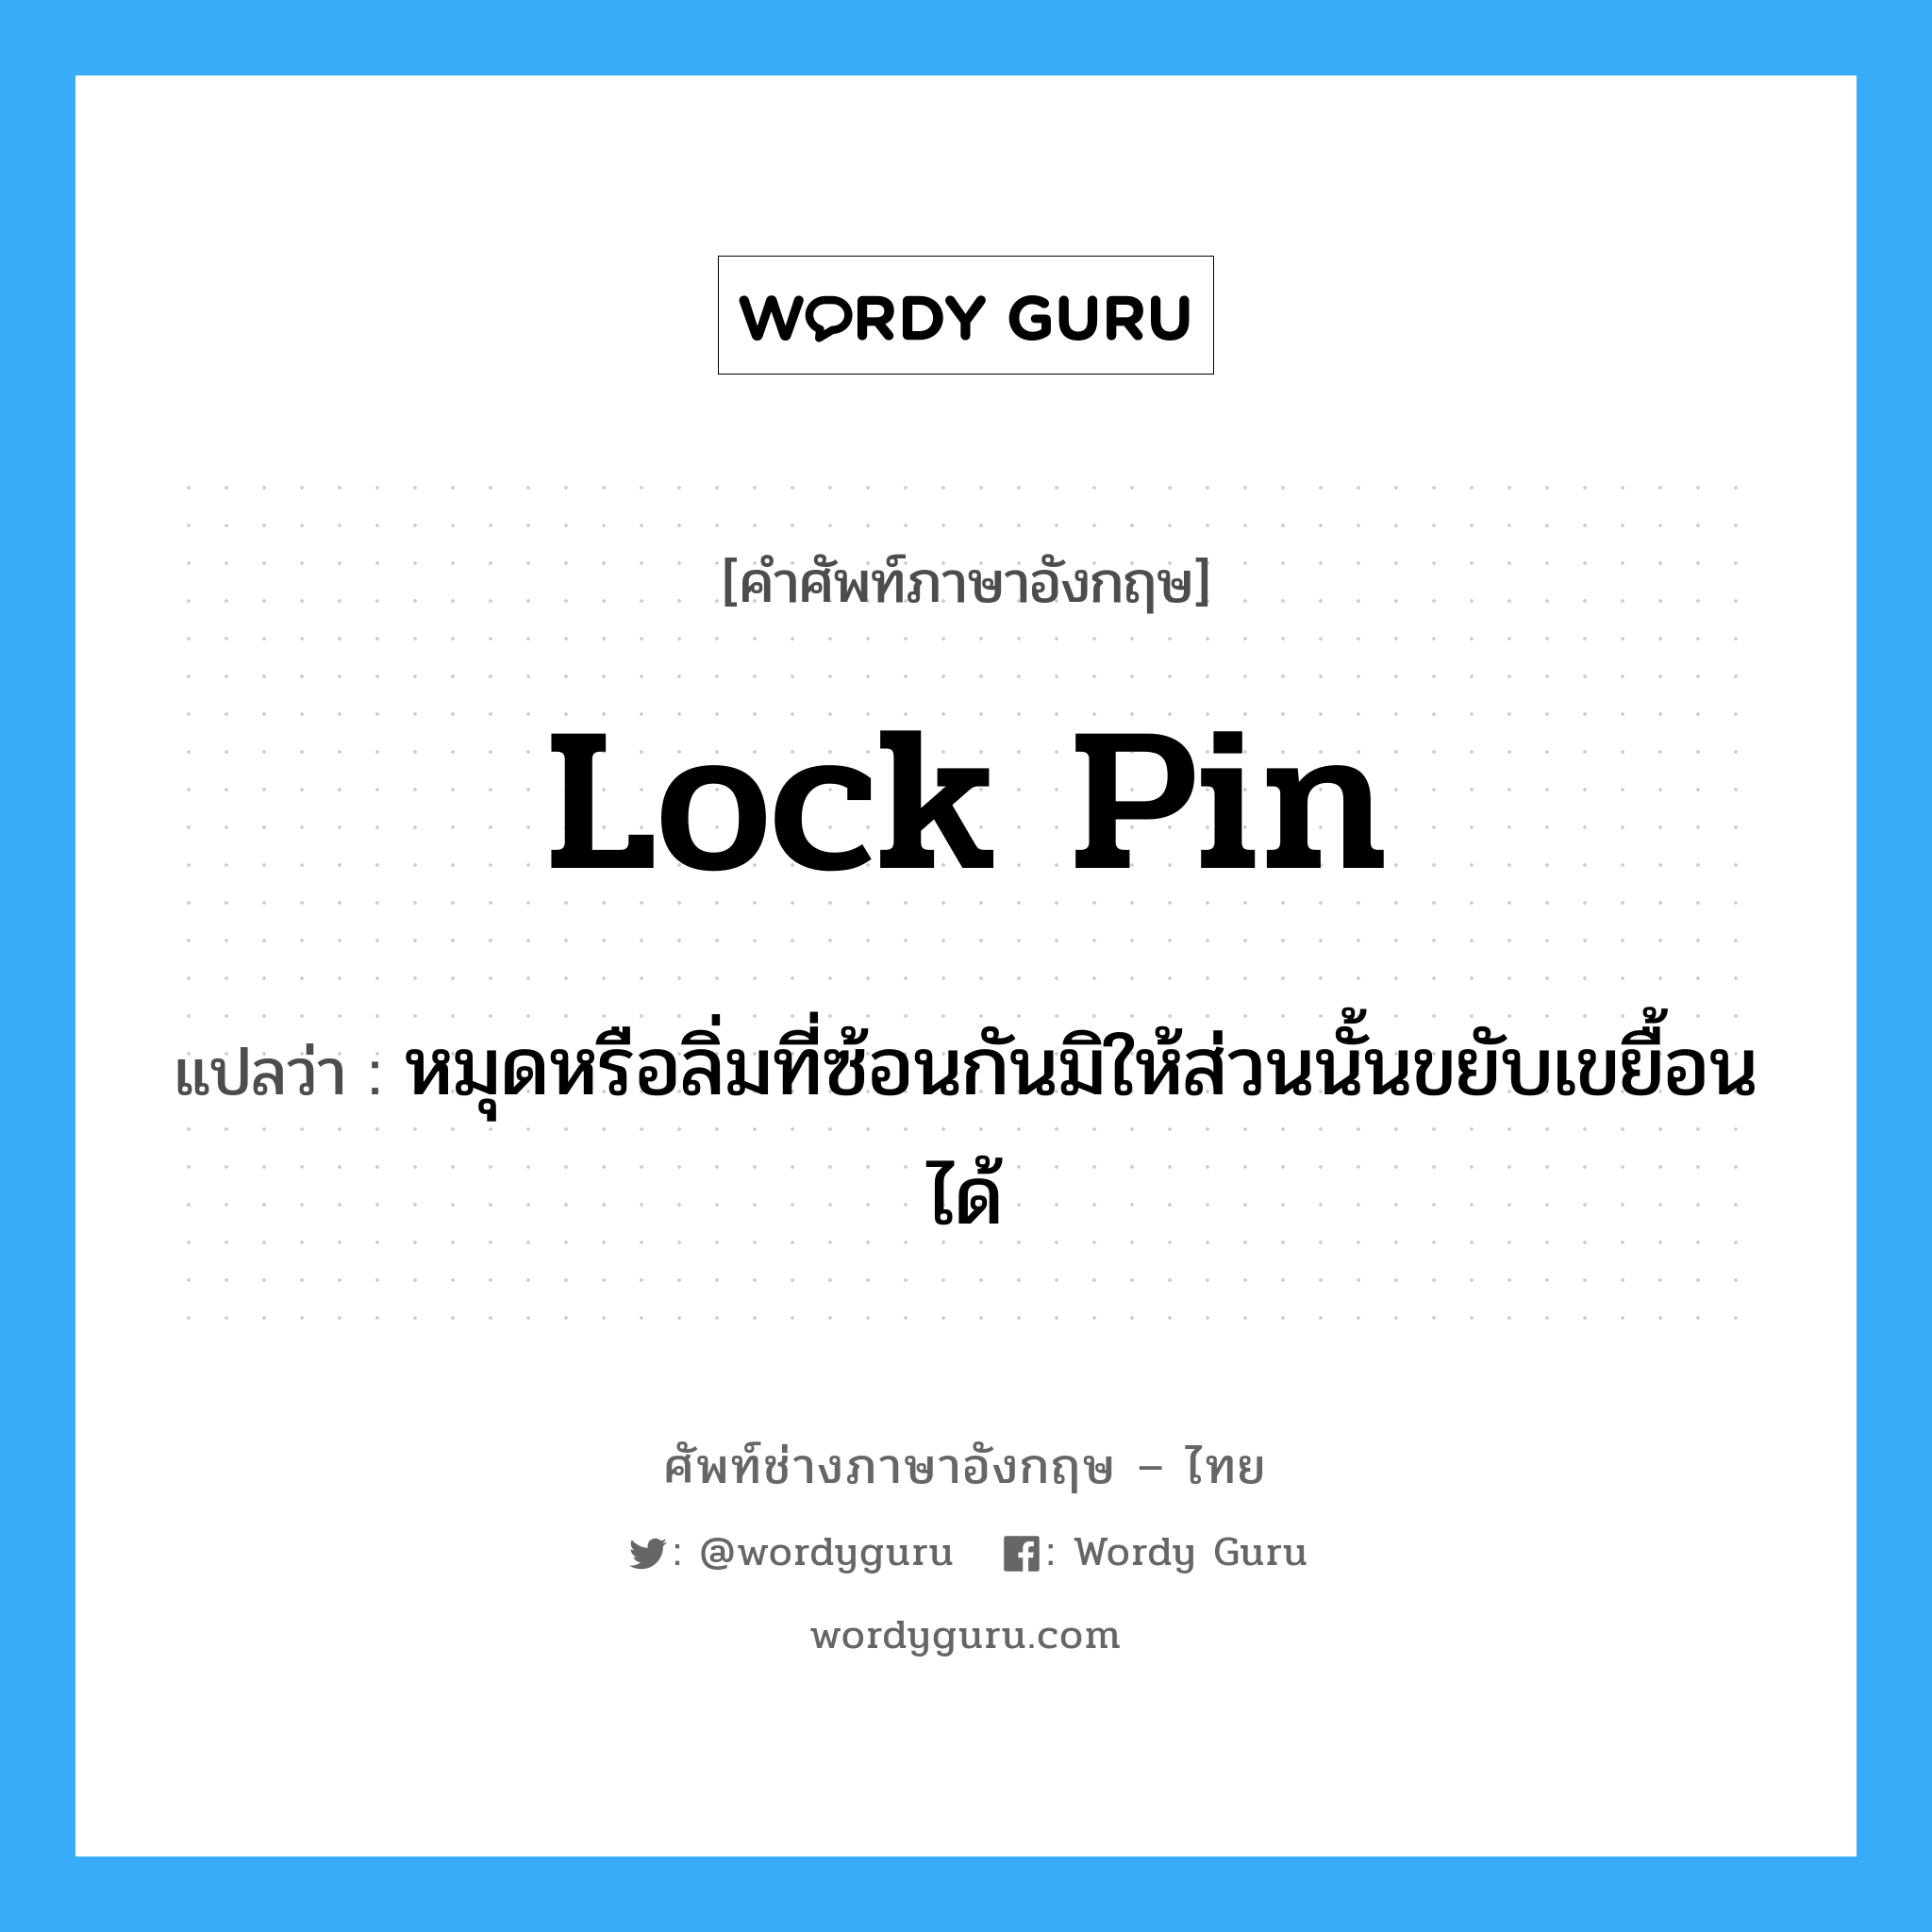 lock pin แปลว่า?, คำศัพท์ช่างภาษาอังกฤษ - ไทย lock pin คำศัพท์ภาษาอังกฤษ lock pin แปลว่า หมุดหรือลิ่มที่ซ้อนกันมิให้ส่วนนั้นขยับเขยื้อนได้